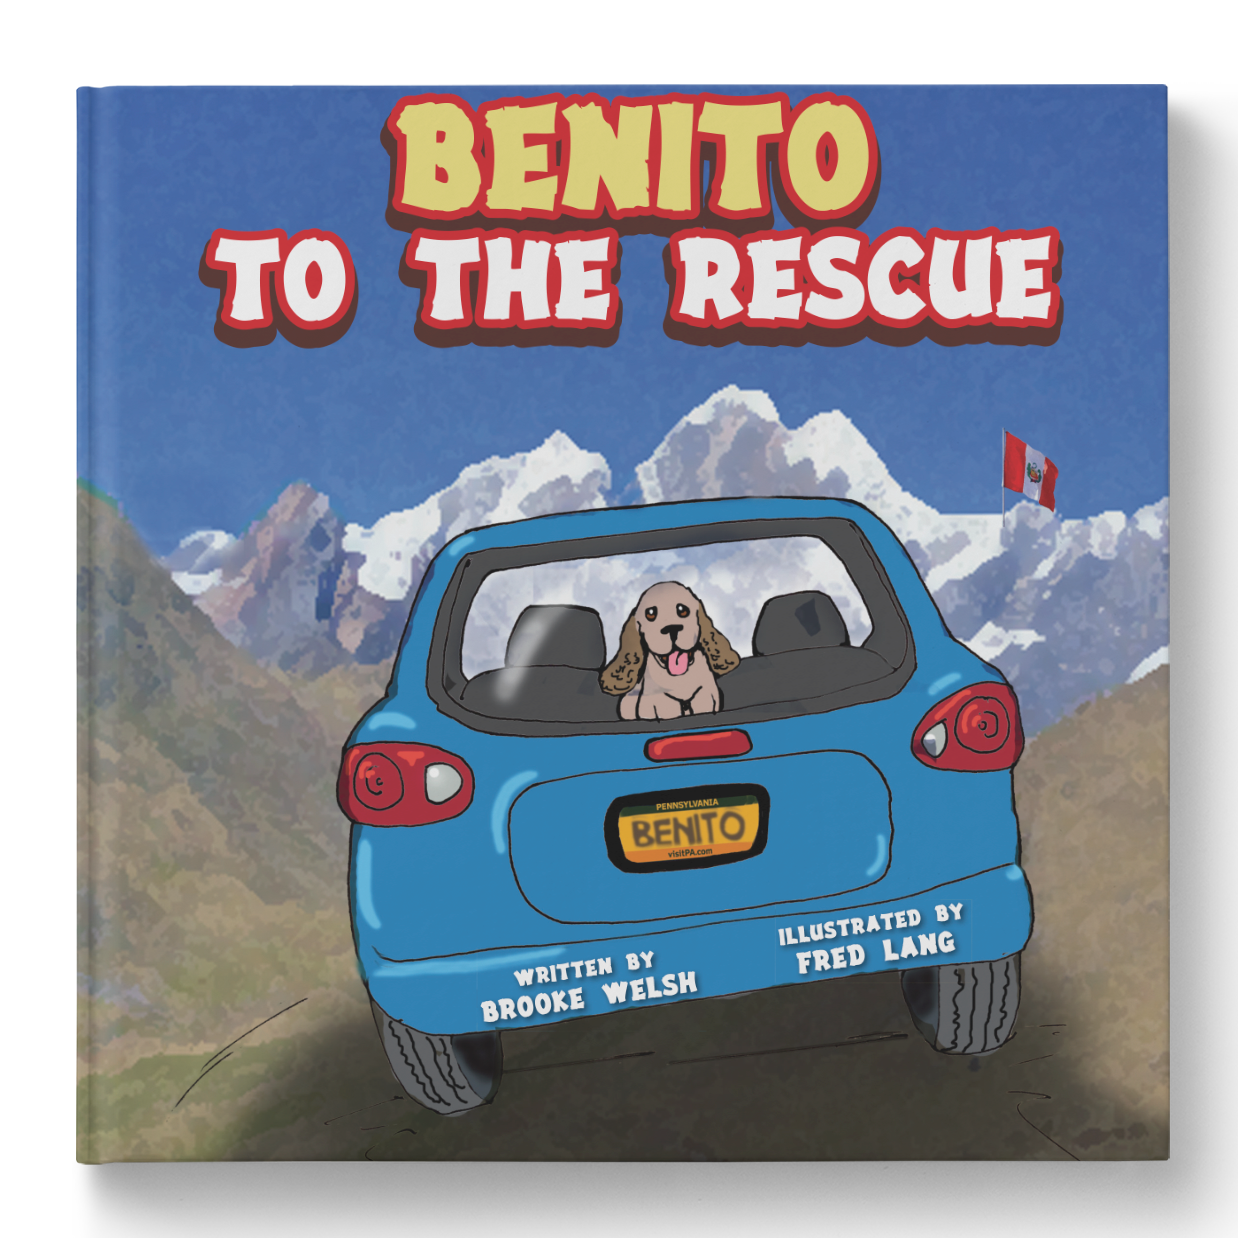 Benito to the Rescue